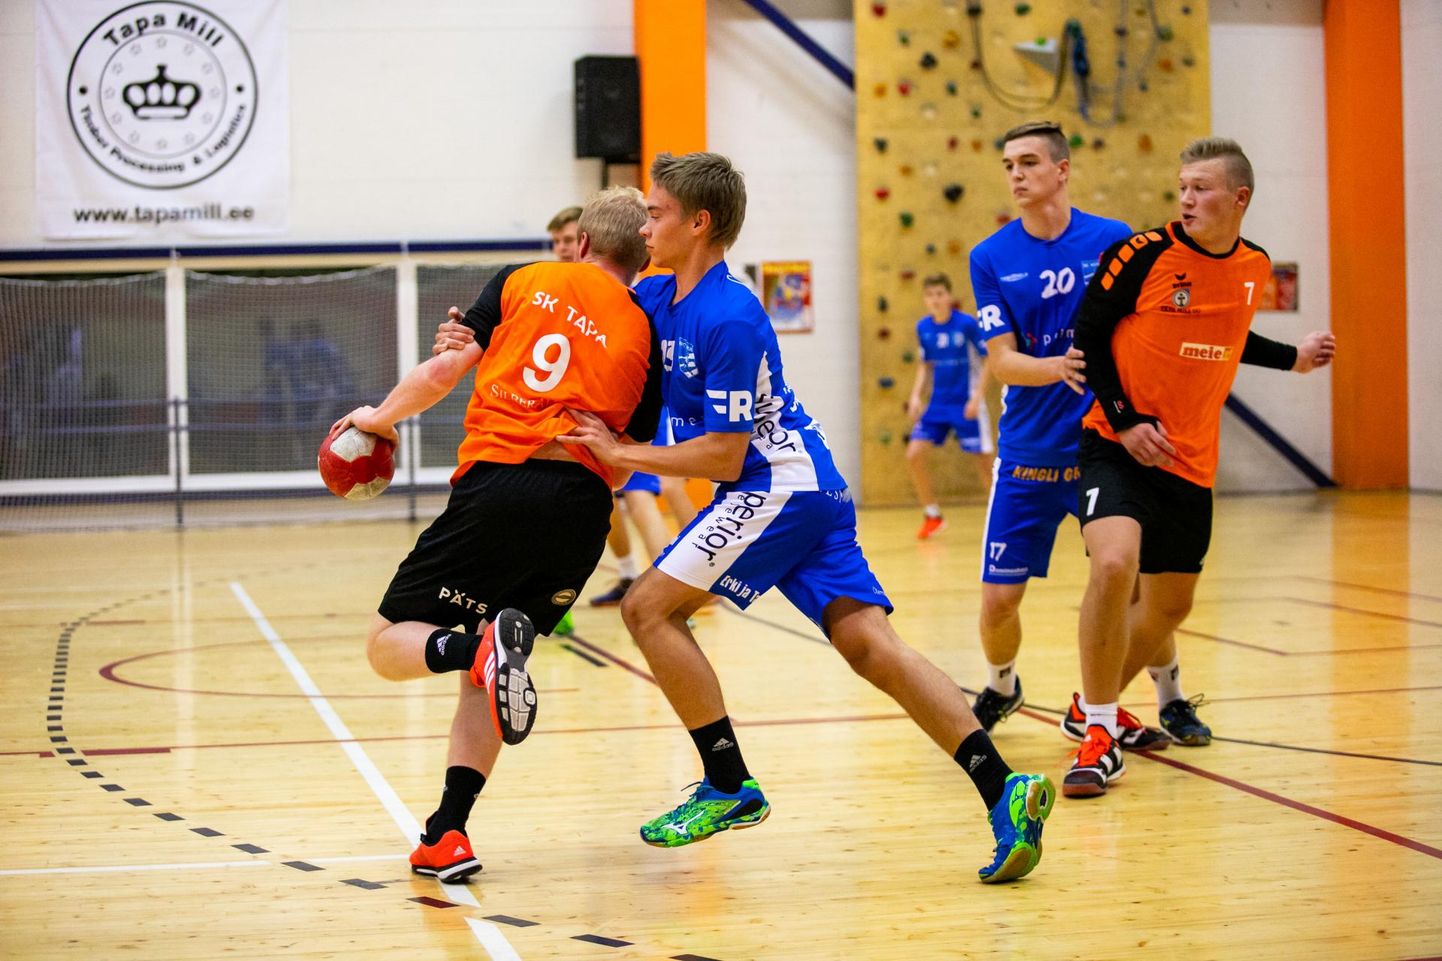 Reedel vandus SK Tapa Eesti meistriliiga käsipallikohtumises võõral väljakul 20:26 alla HC Kehra/Horizon Pulp&Paper meeskonnale.